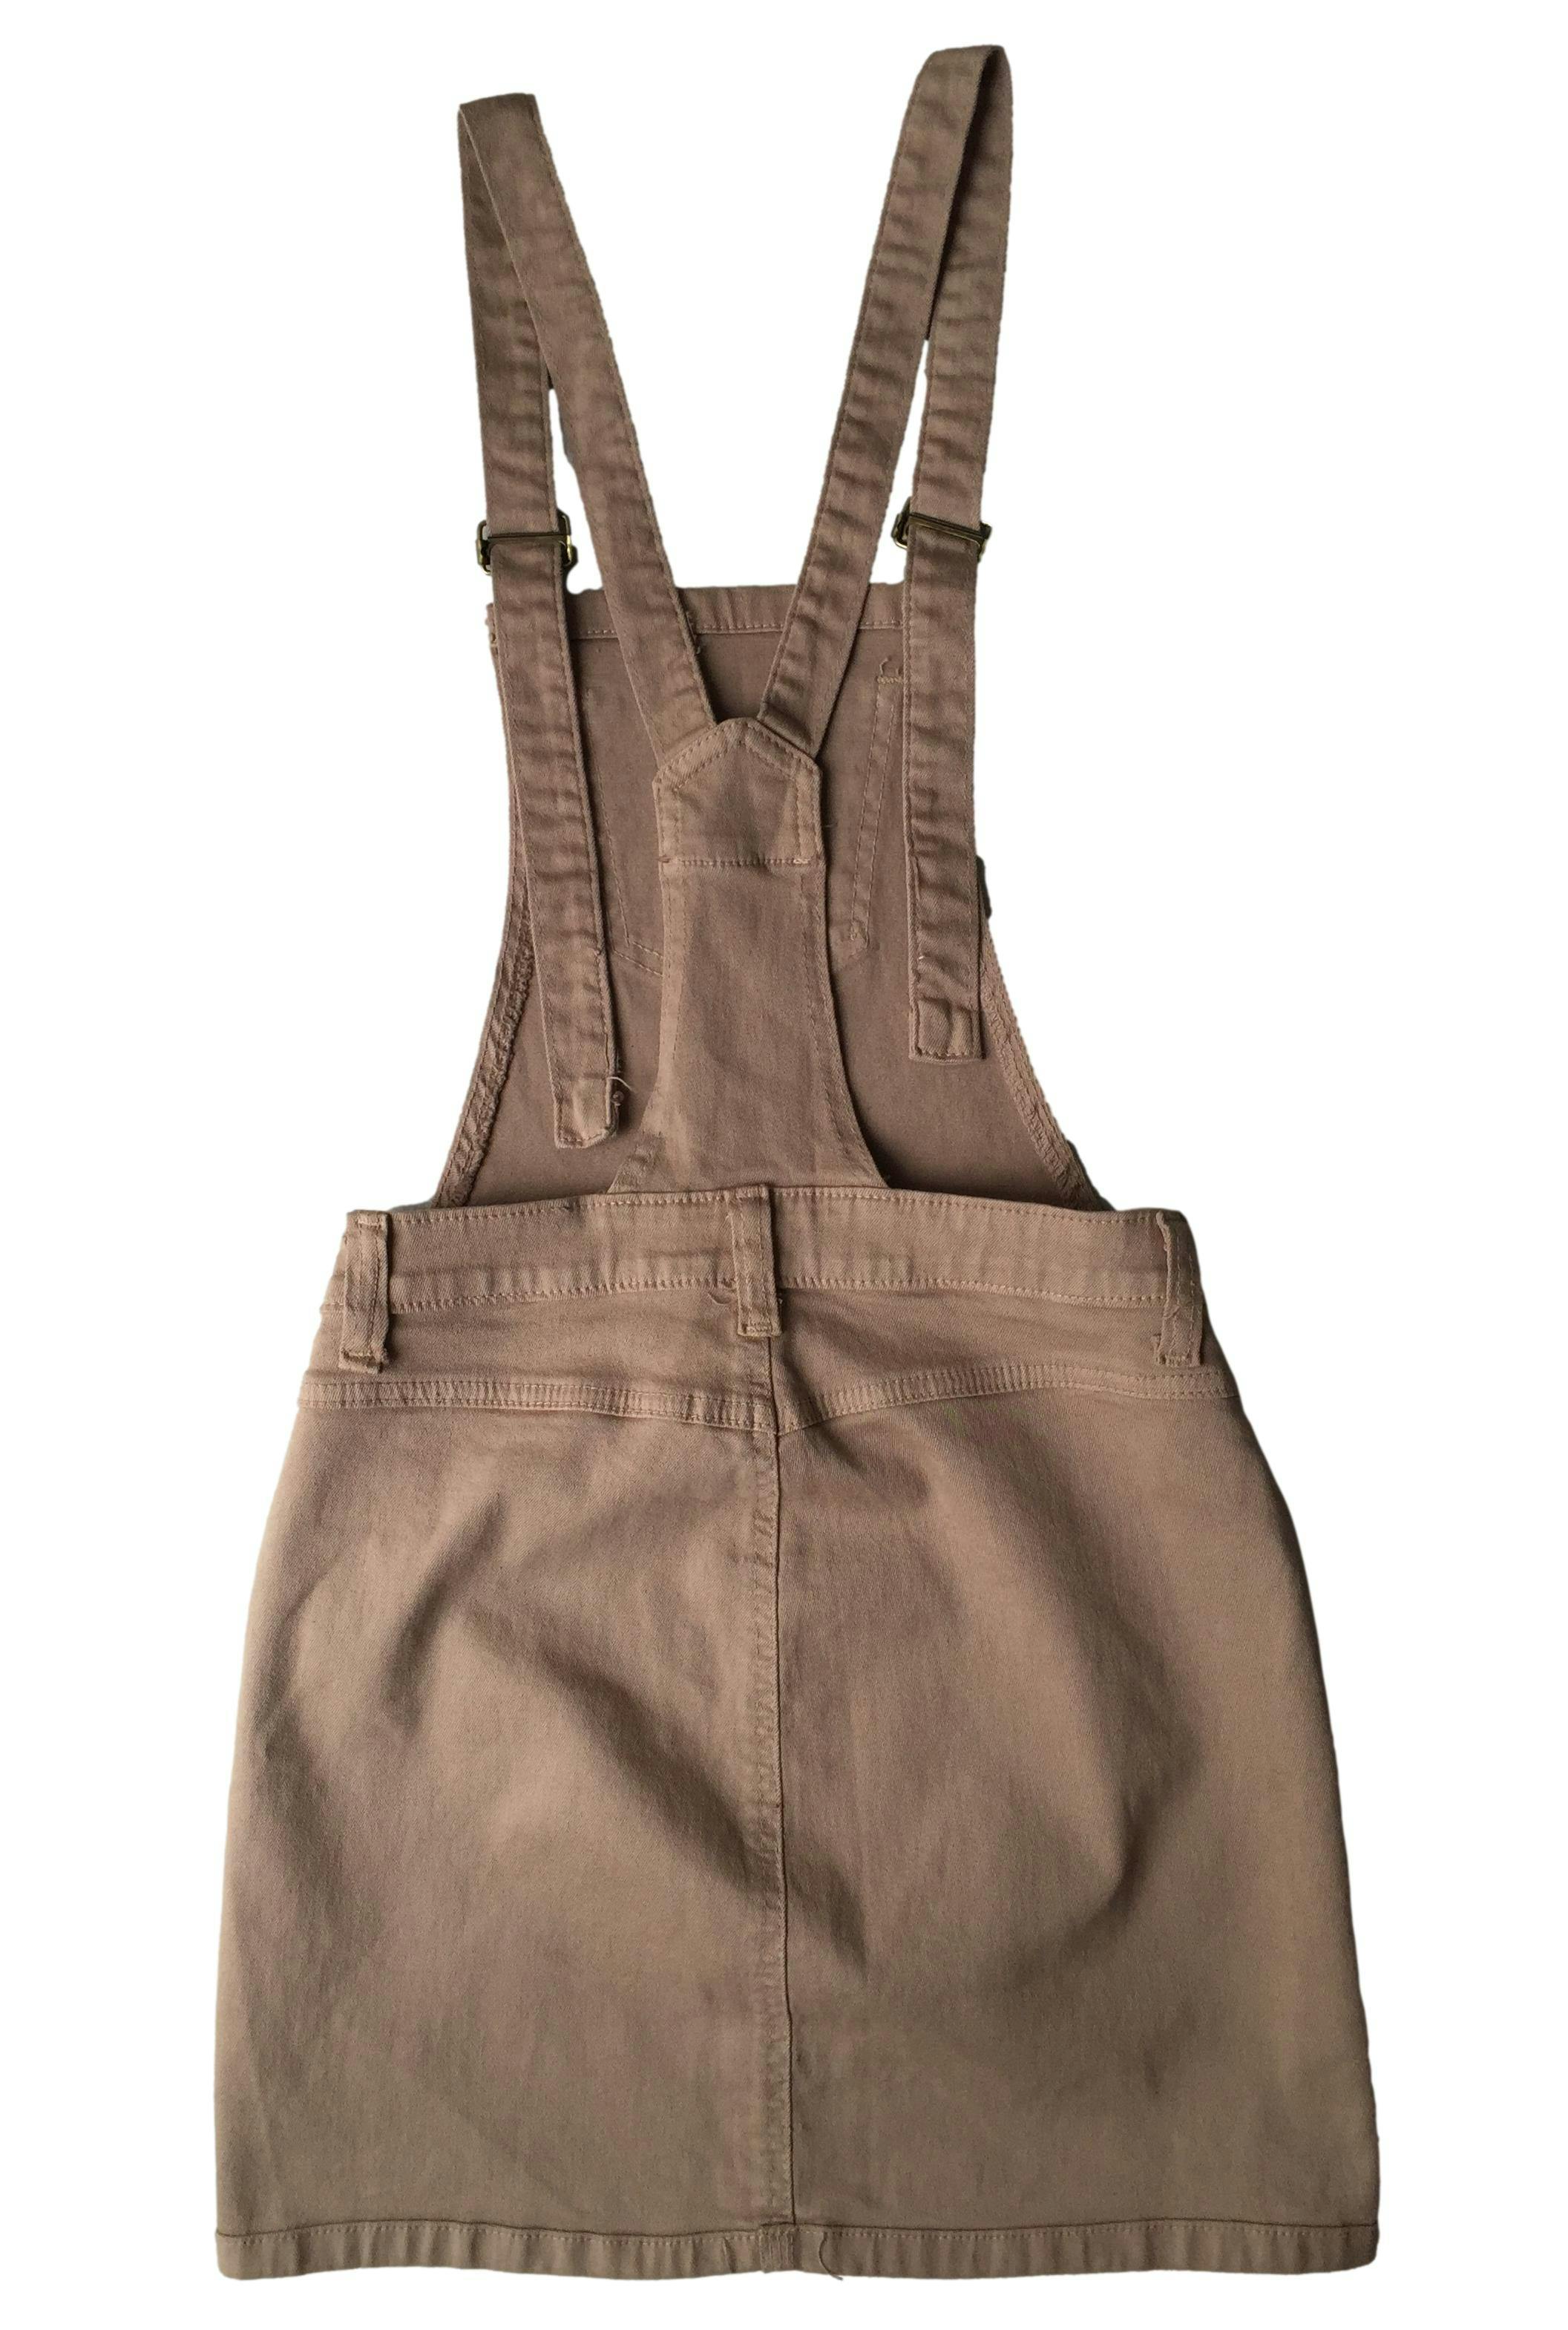 Overol falda marrón, tiras regulables, botones laterales y rasgados.  Cintura: 64cm, Largo: 81cm | Las Traperas